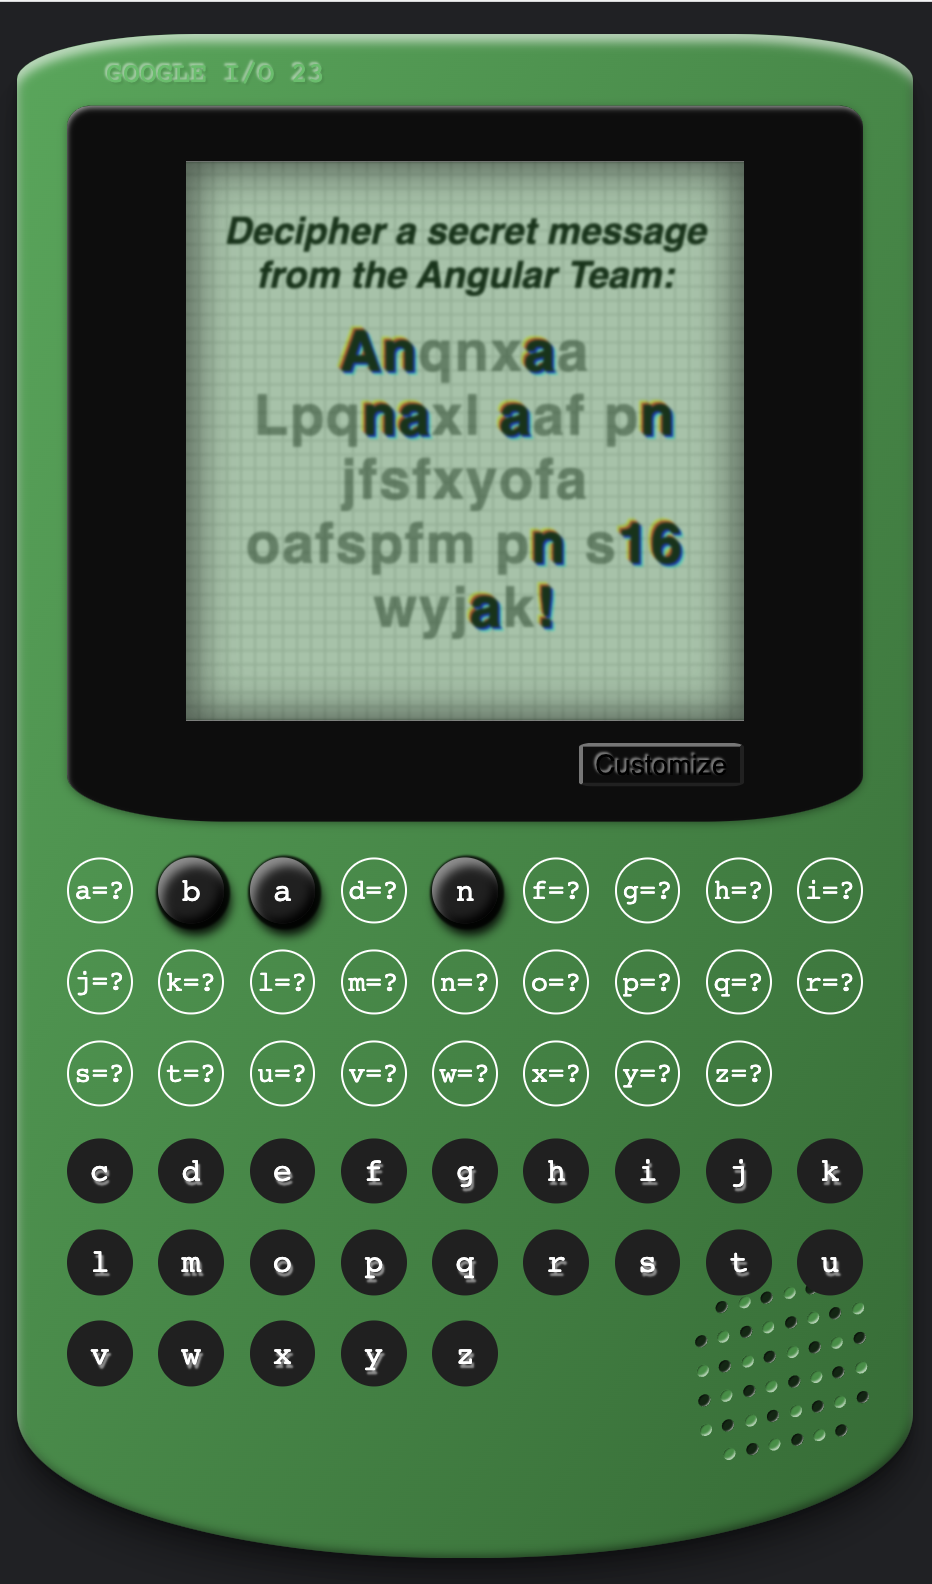 بازی Angular Cypher در سبک یک کنسول بازی وینتیج سبز با پیام مخفی بر روی صفحه نمایش 'Anqnxaa Lpcnaxl aaf pn jfafxyofa aofapfm pn a16 wyjak!'